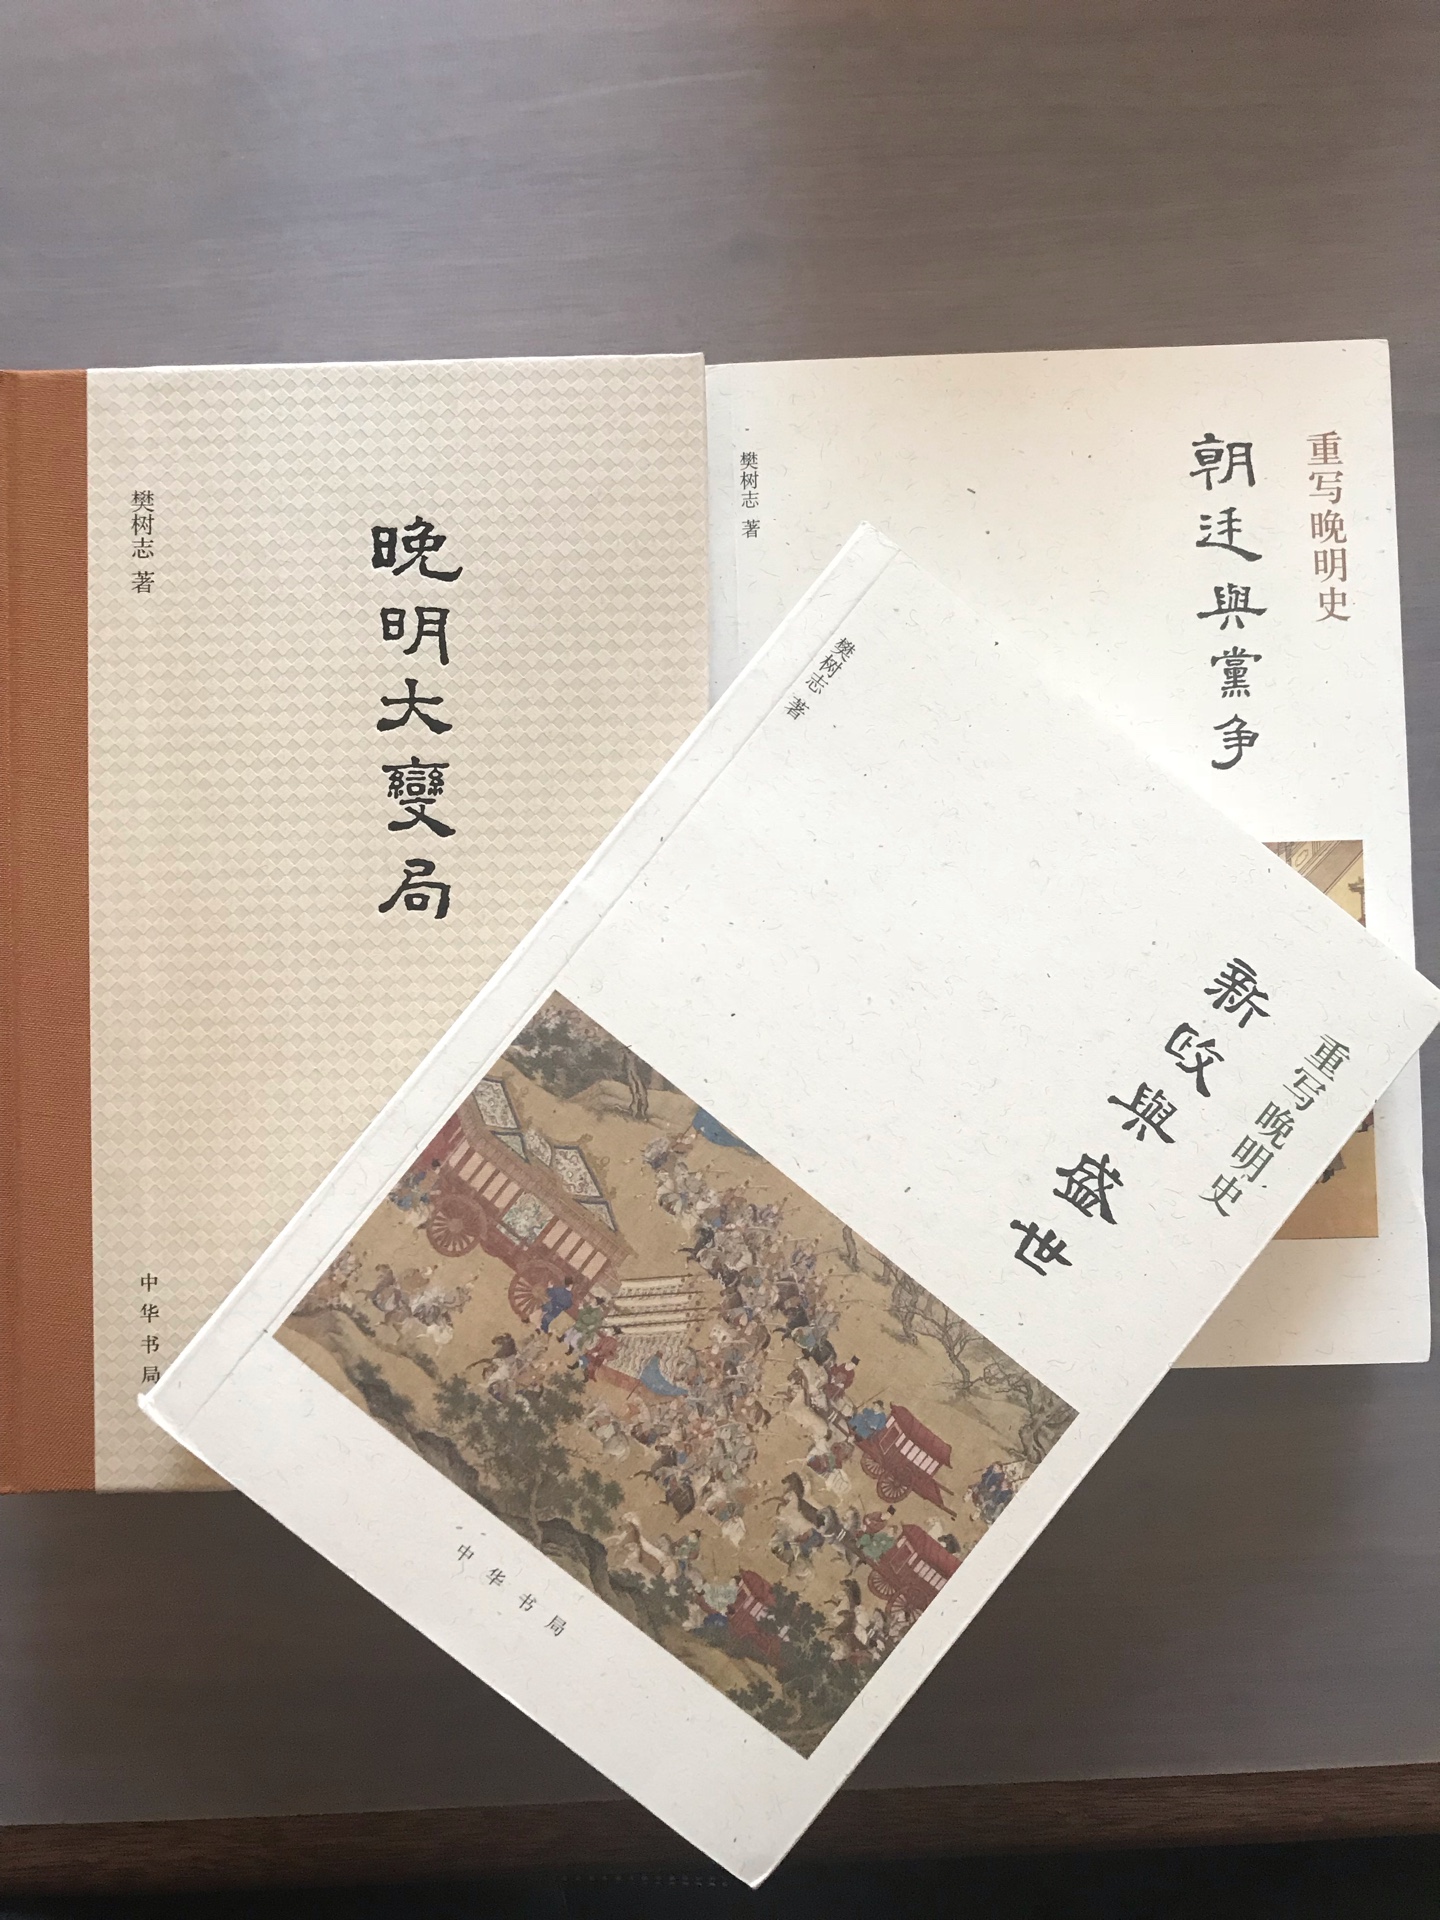 只要是樊树志的书，必买，还收藏了很多本，例如国史十六讲